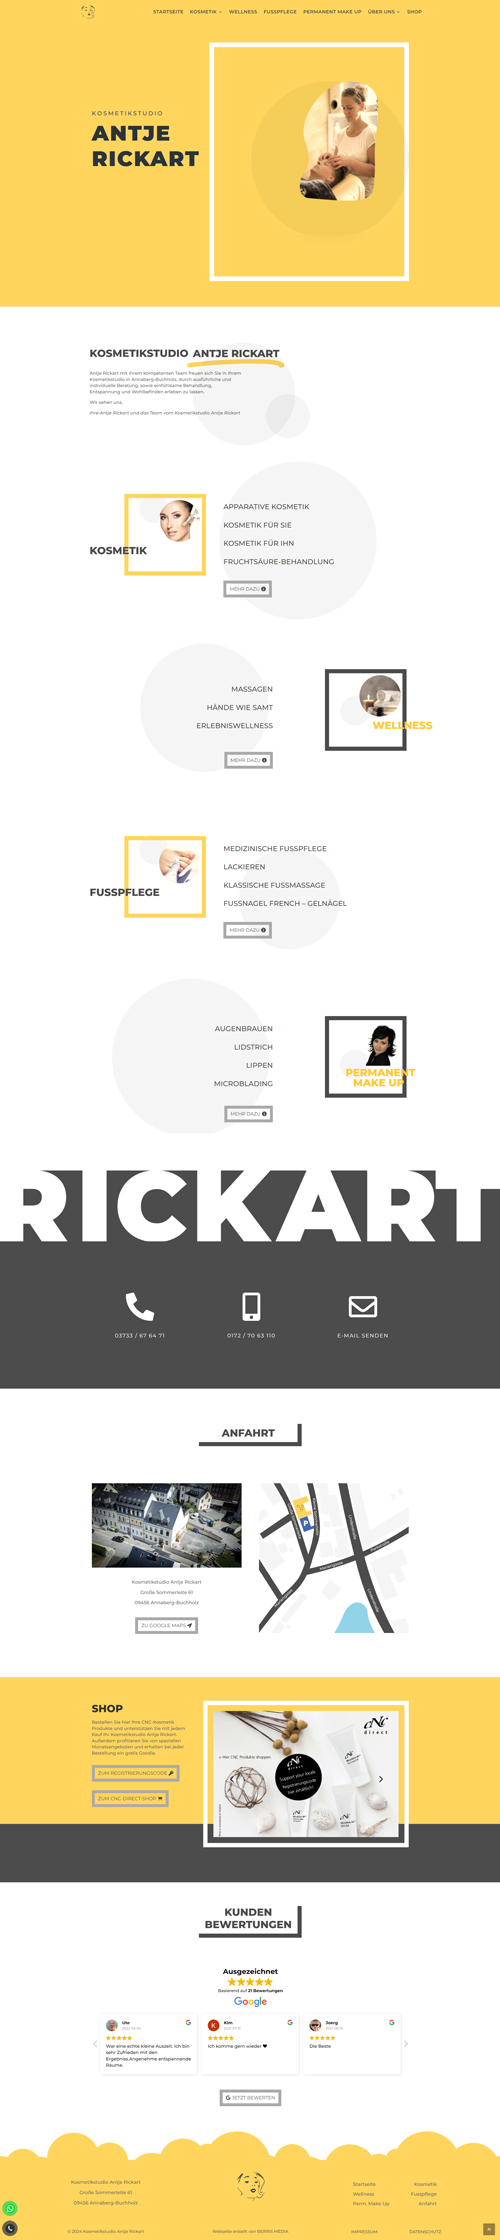 Erstellung einer Homepage für das Kosmetikstudio Antje Rickart in Annaberg-Buchholz